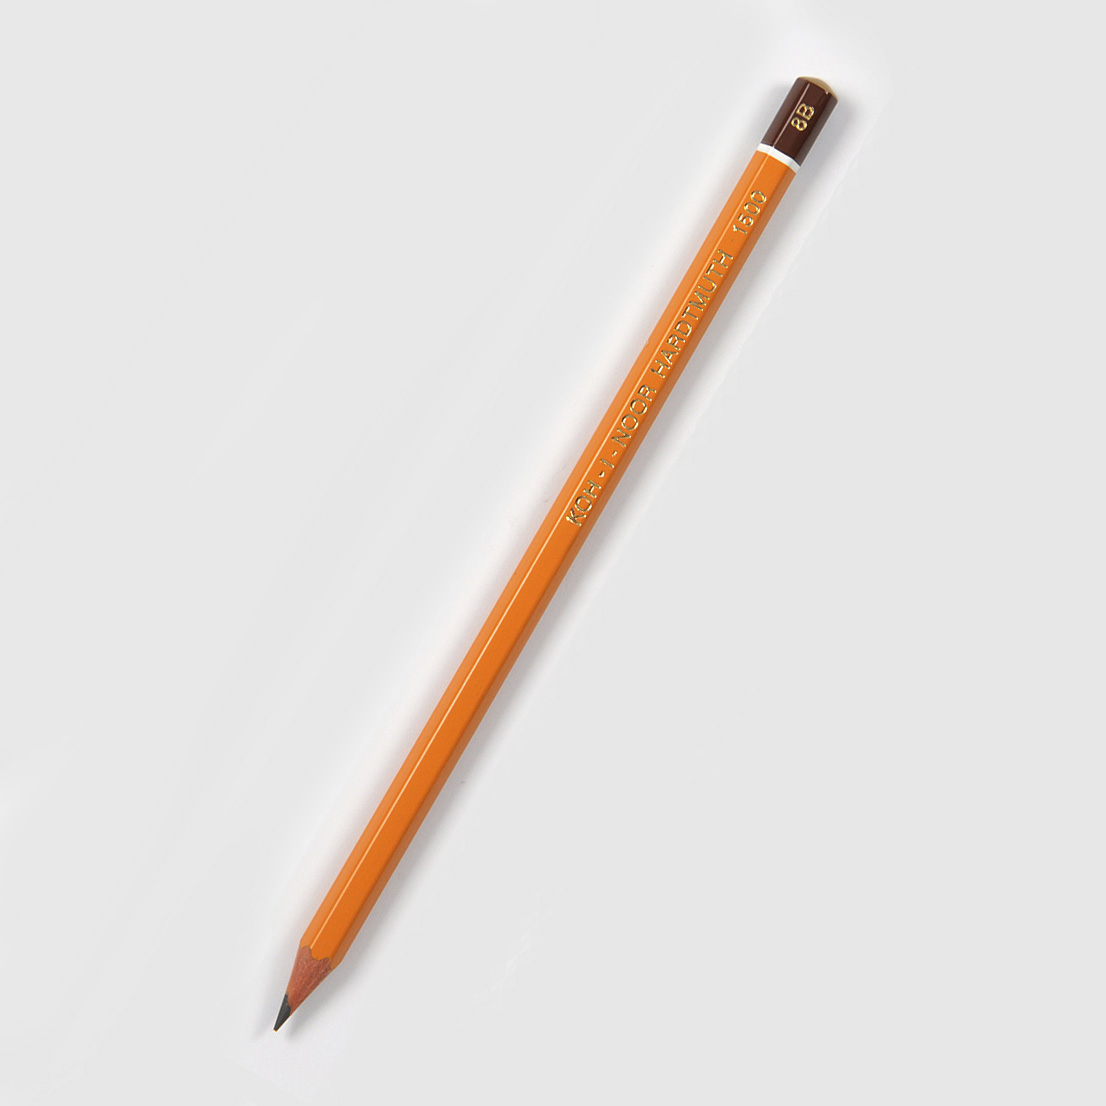 Grafitová tužka Koh-i-noor 1500, 8B, šestihranná